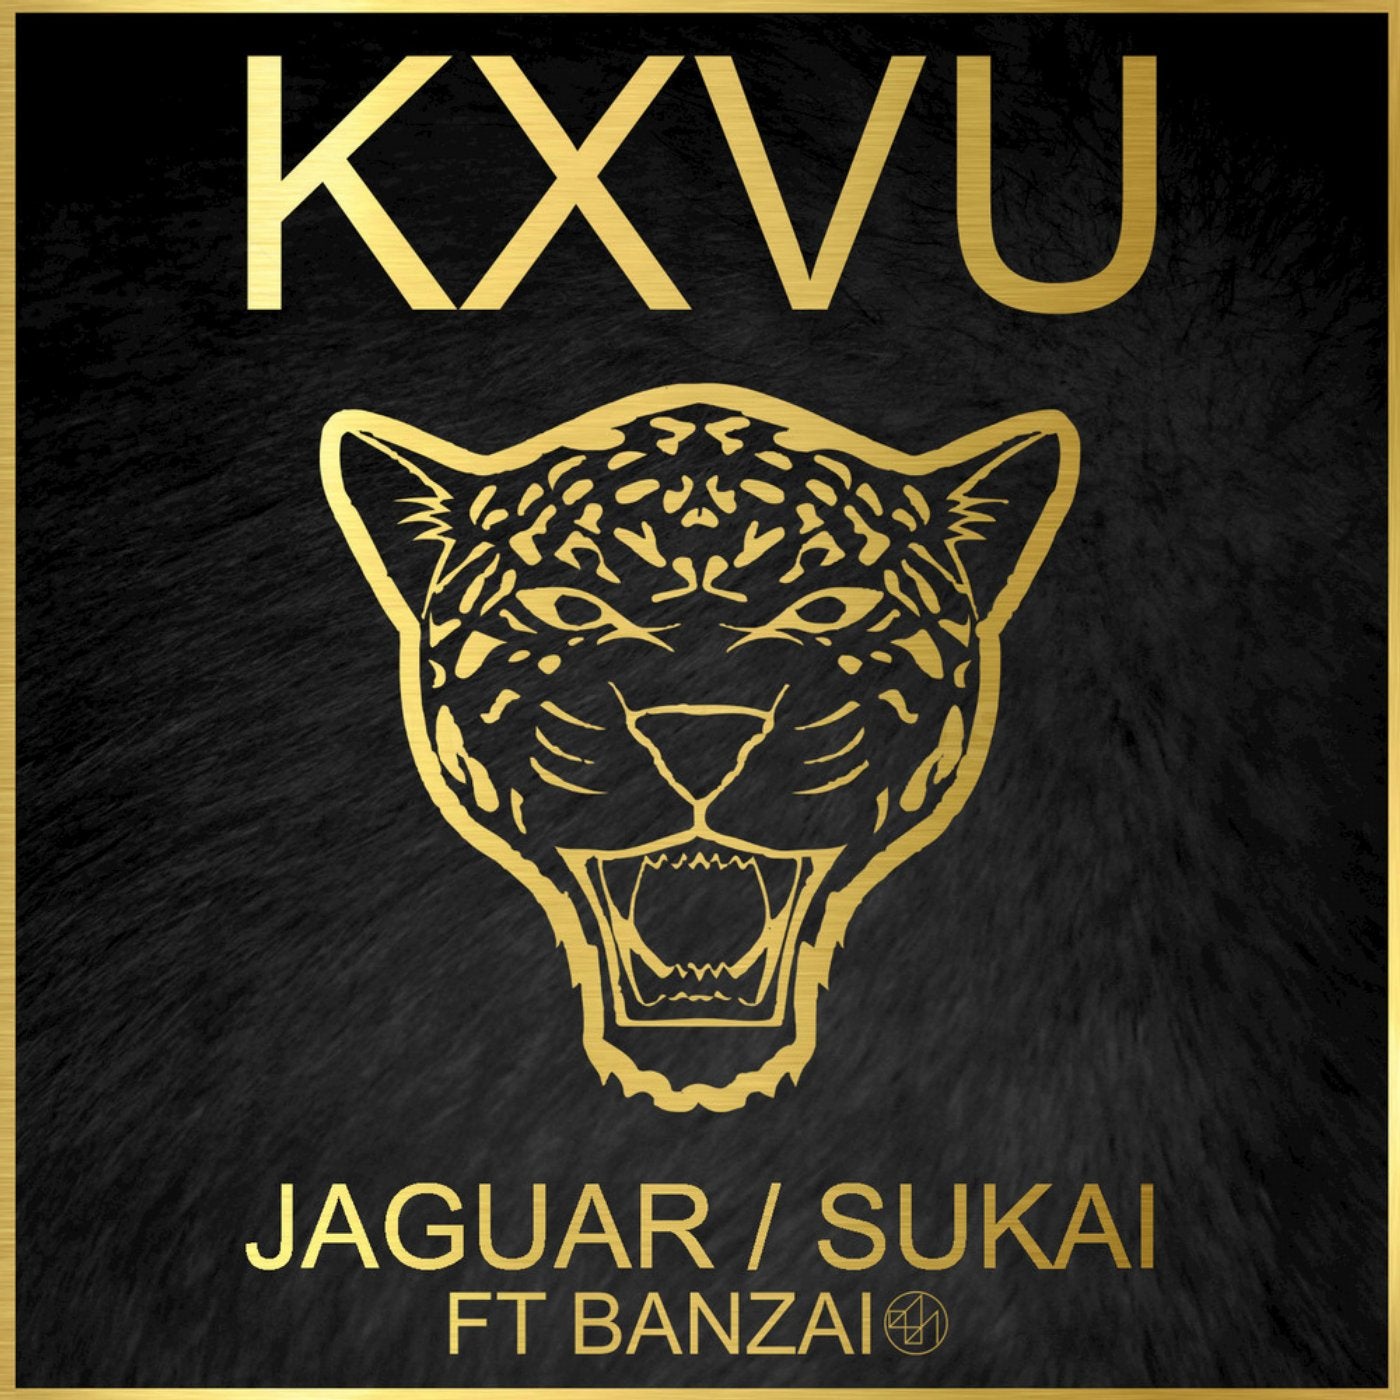 Jaguar / Sukai